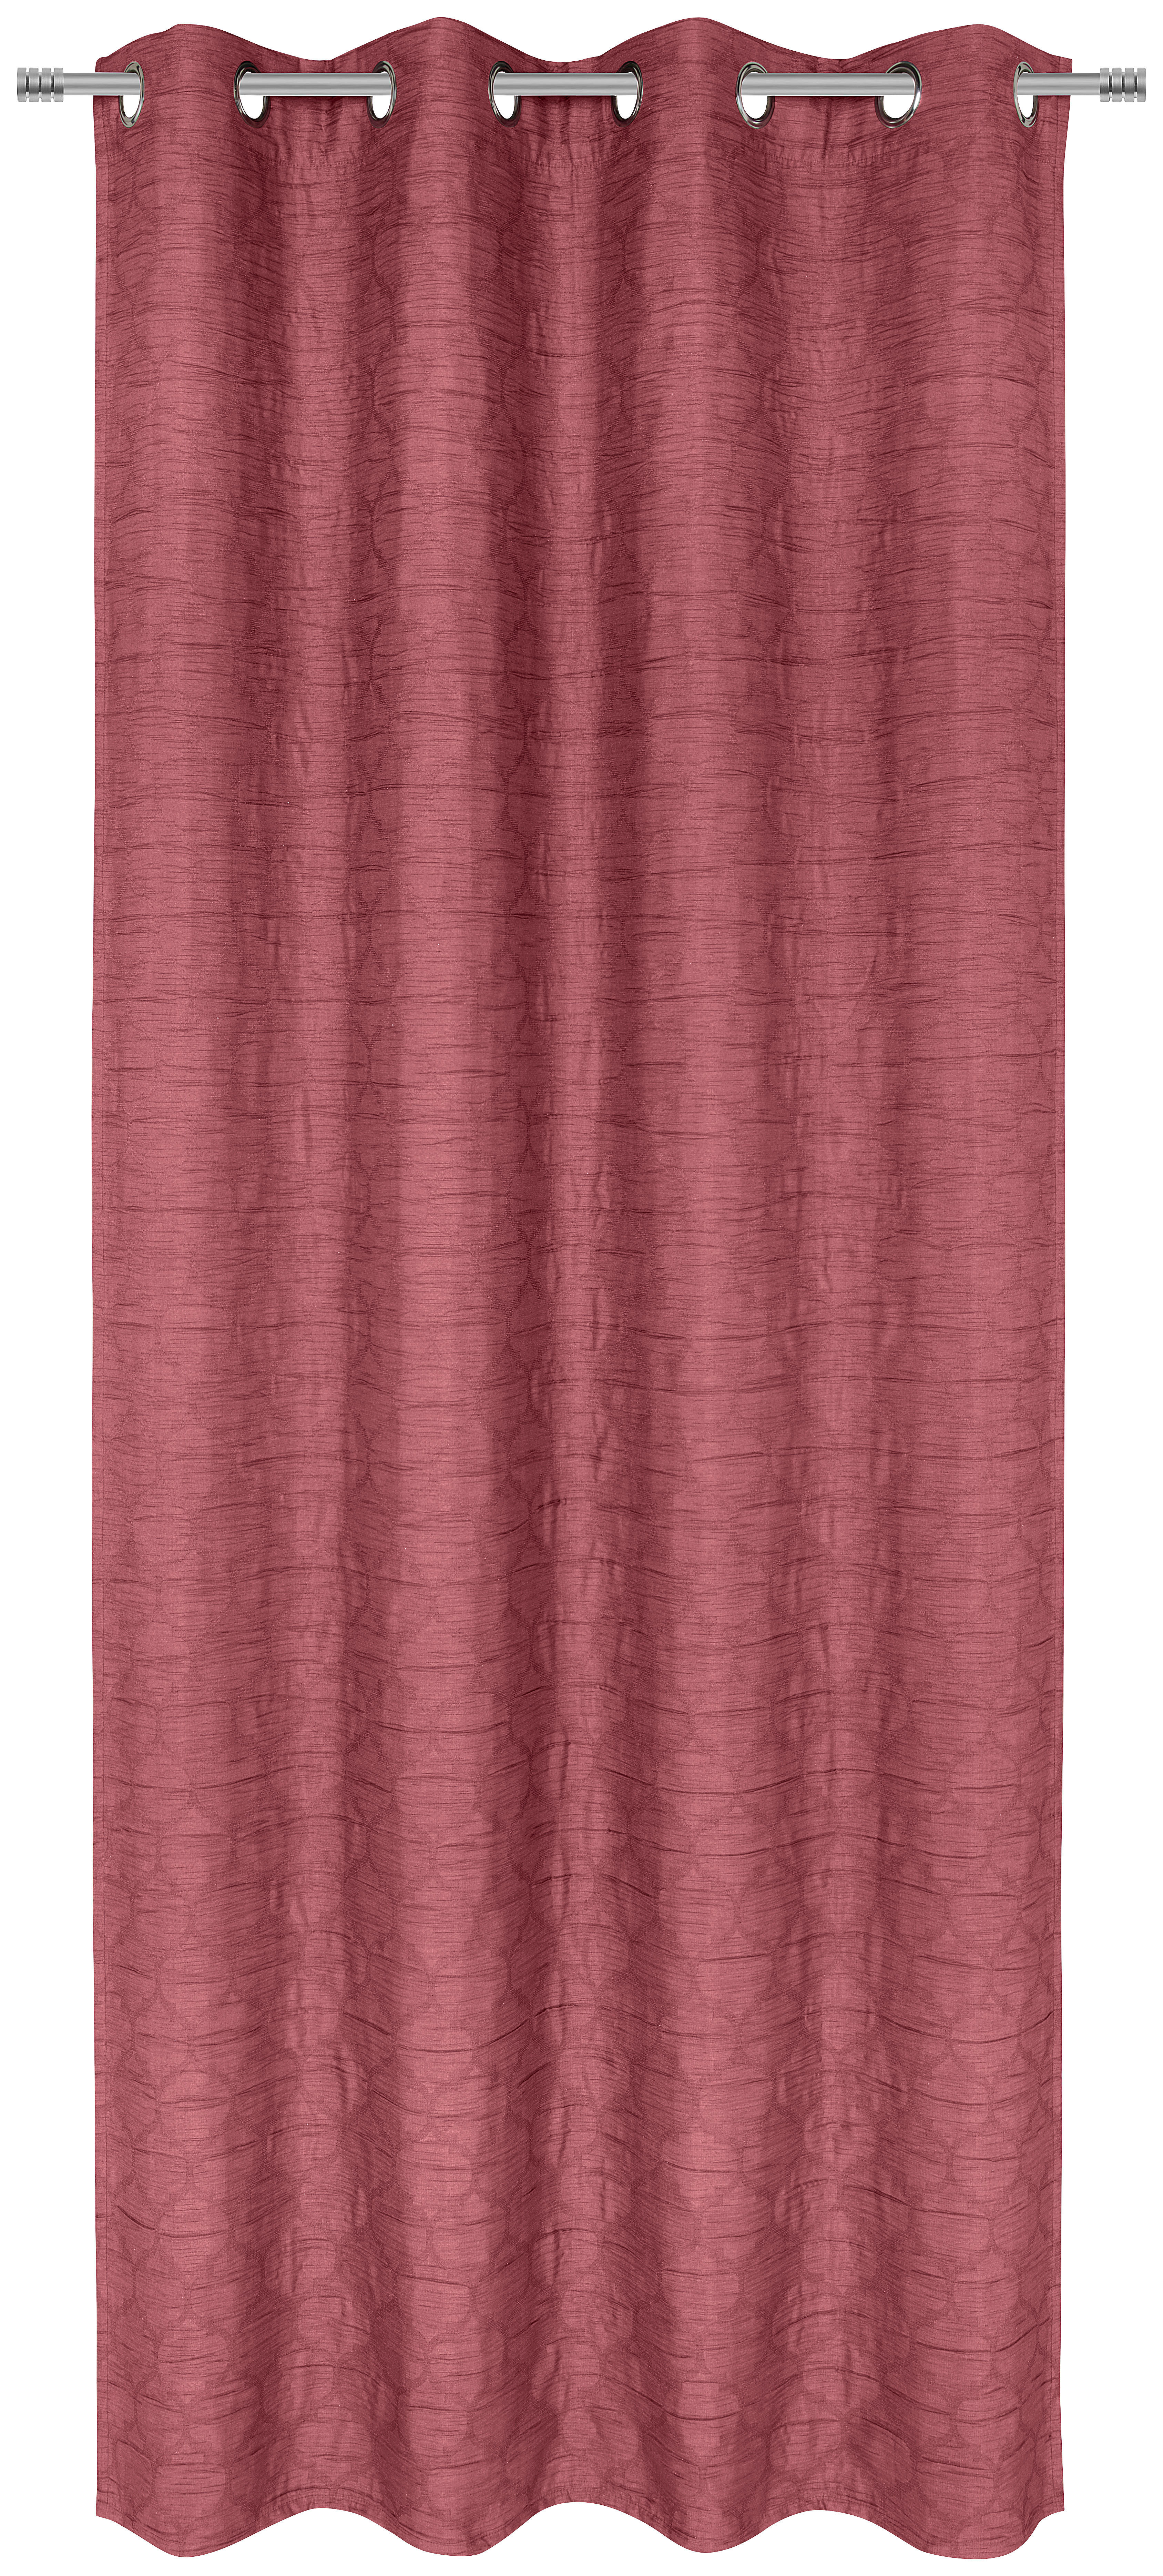 ÖSENSCHAL SAN MARCO black-out (lichtundurchlässig) 135/245 cm   - Beere, Basics, Textil (135/245cm) - Esposa